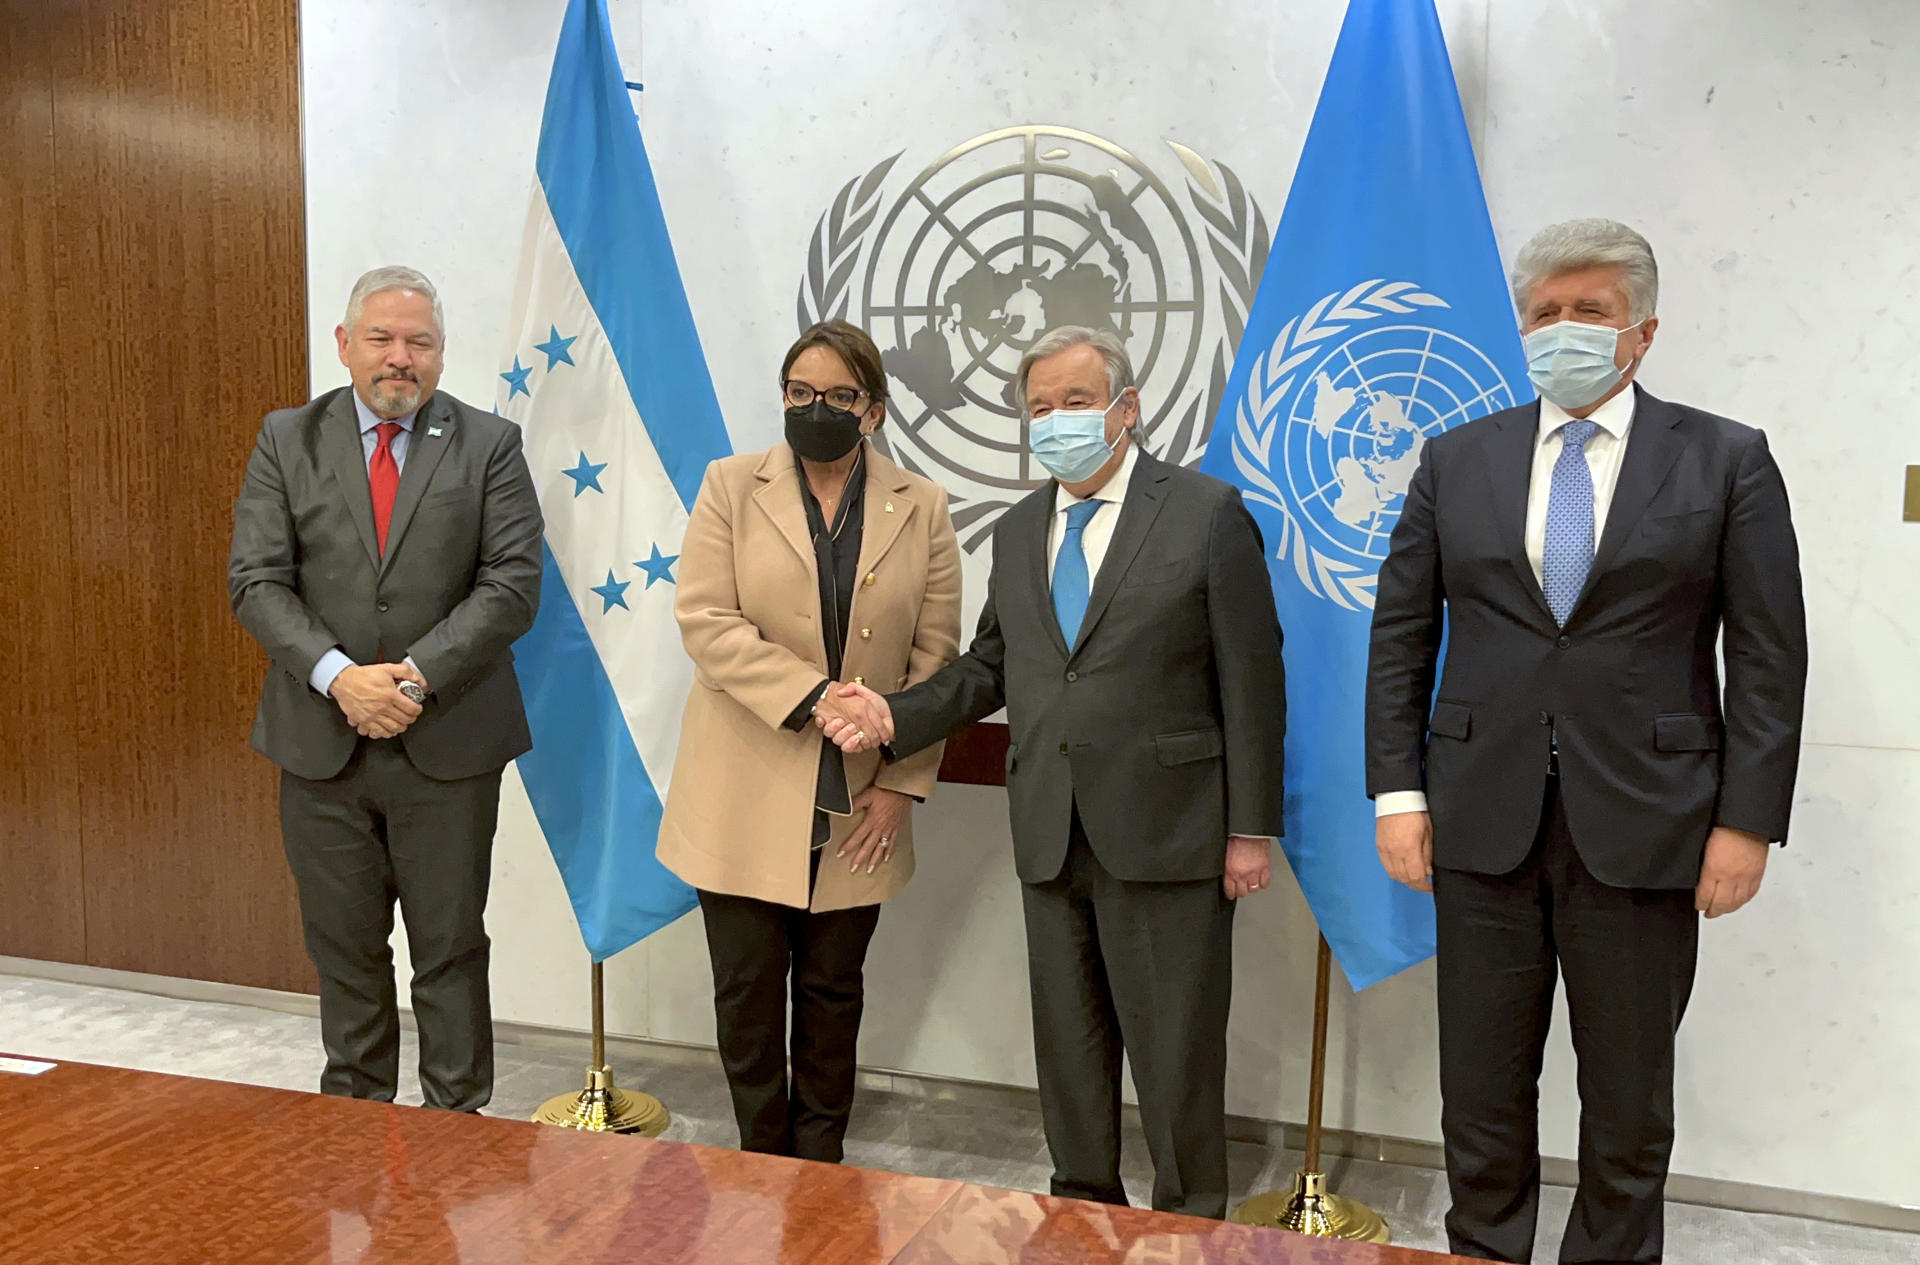 Expertos de la ONU llegan a Honduras para preparar el establecimiento de una misión internacional